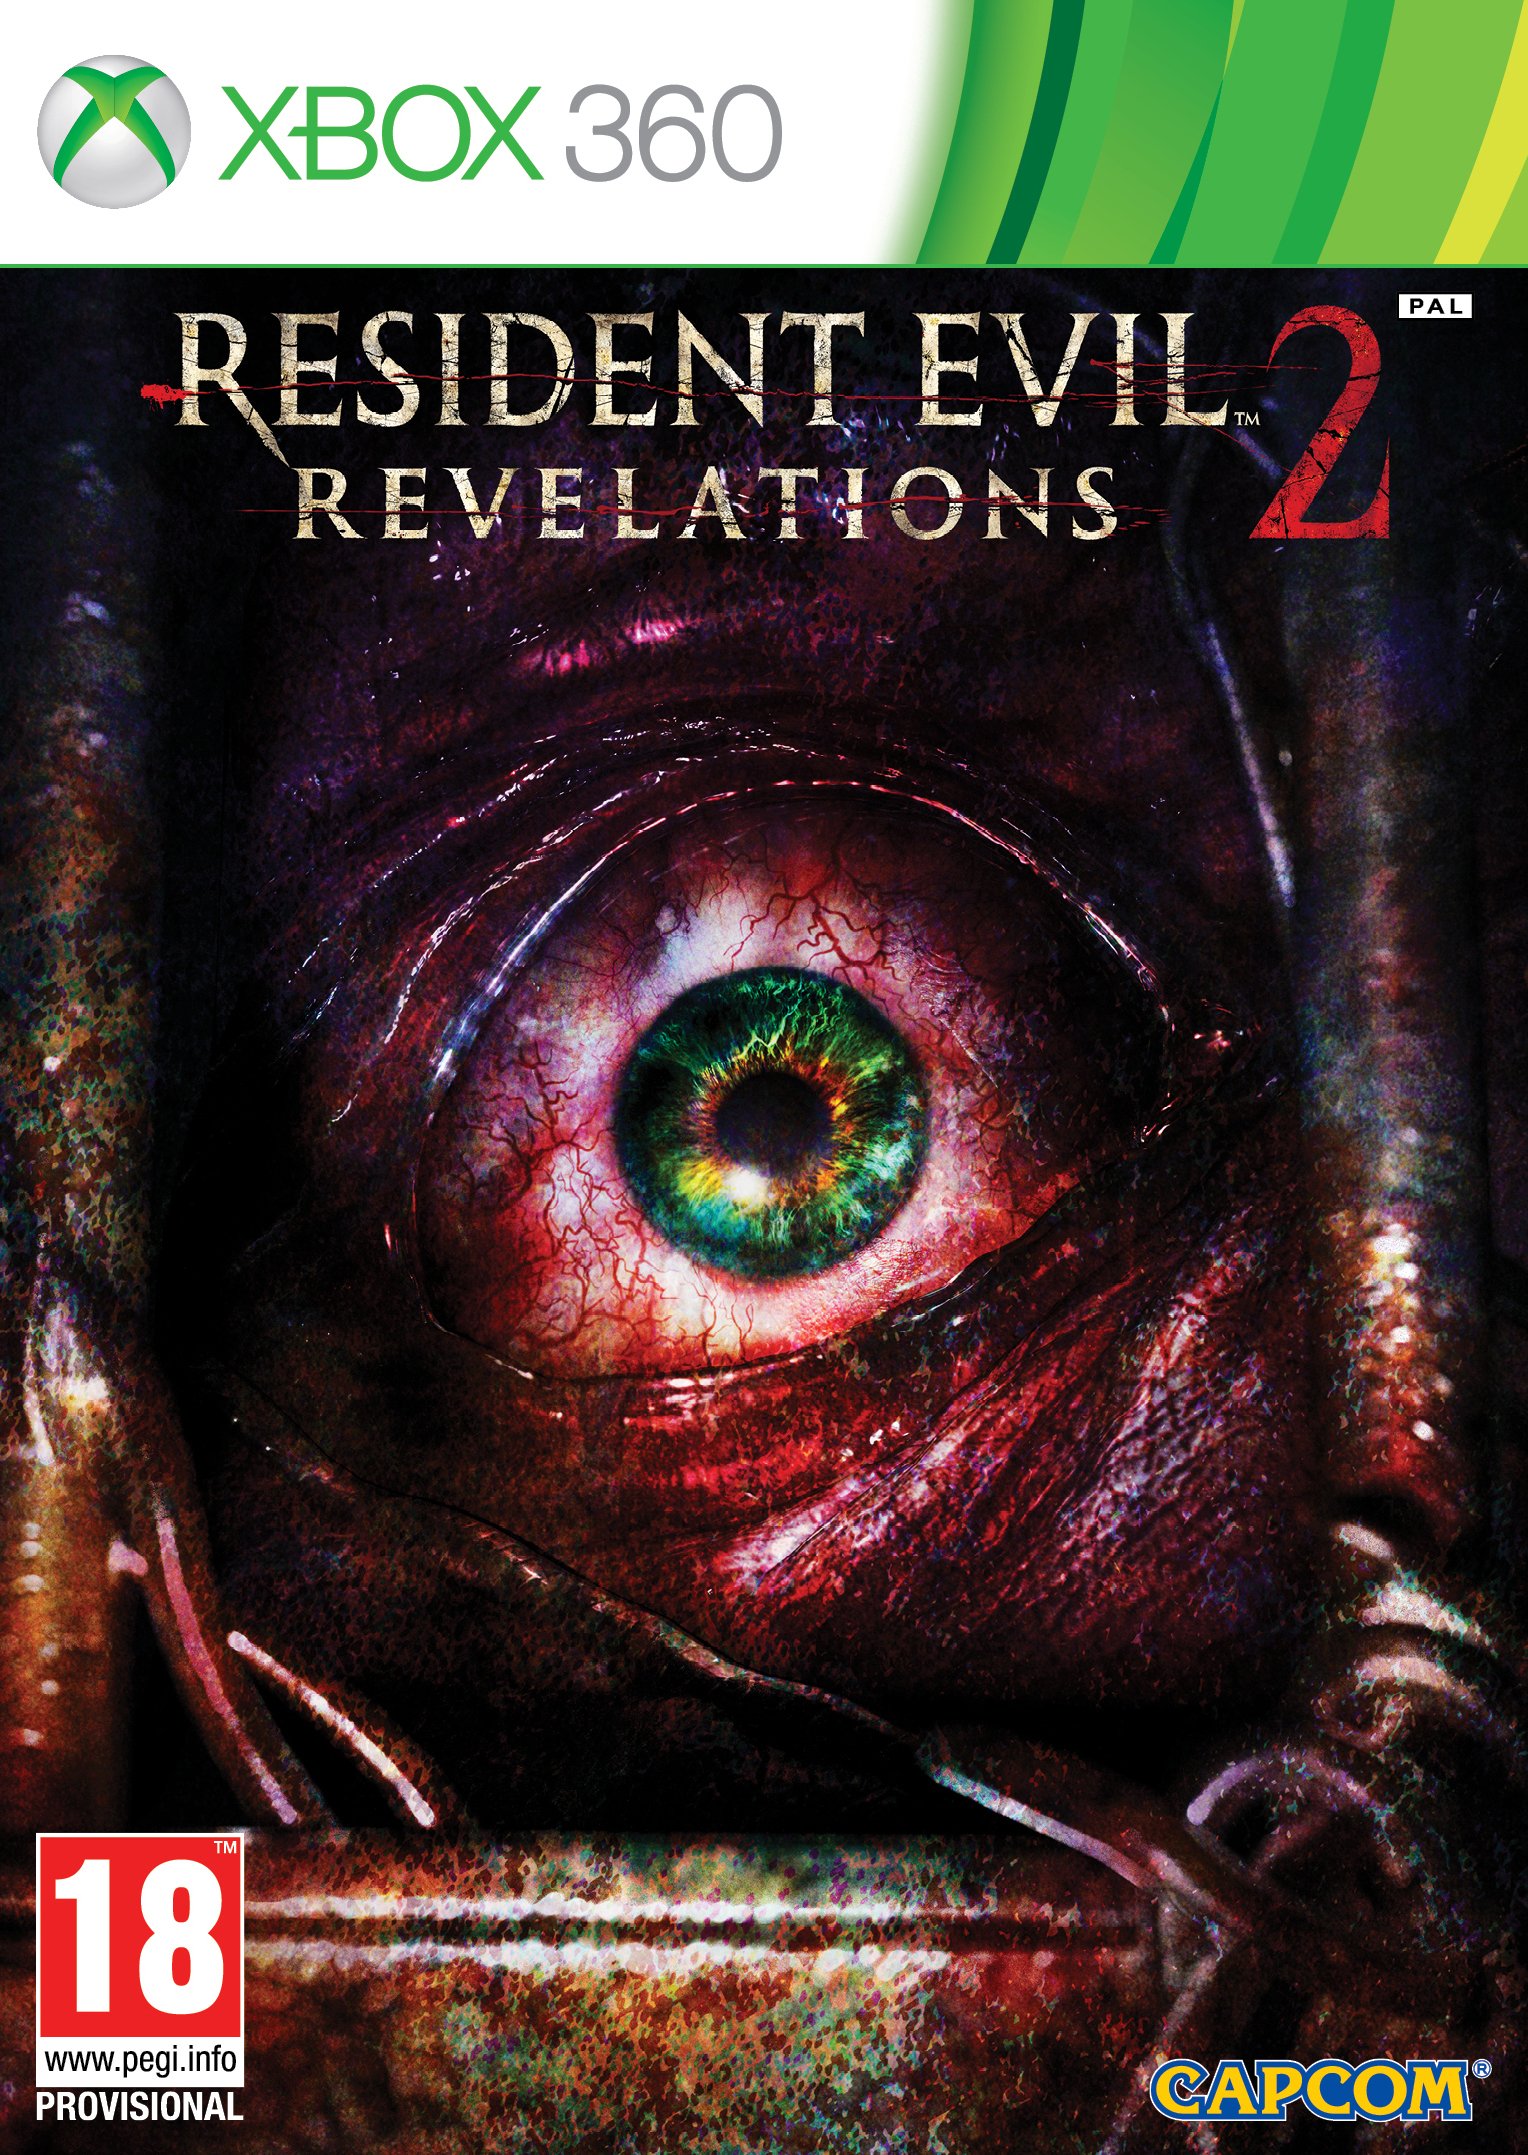 Resident Evil review